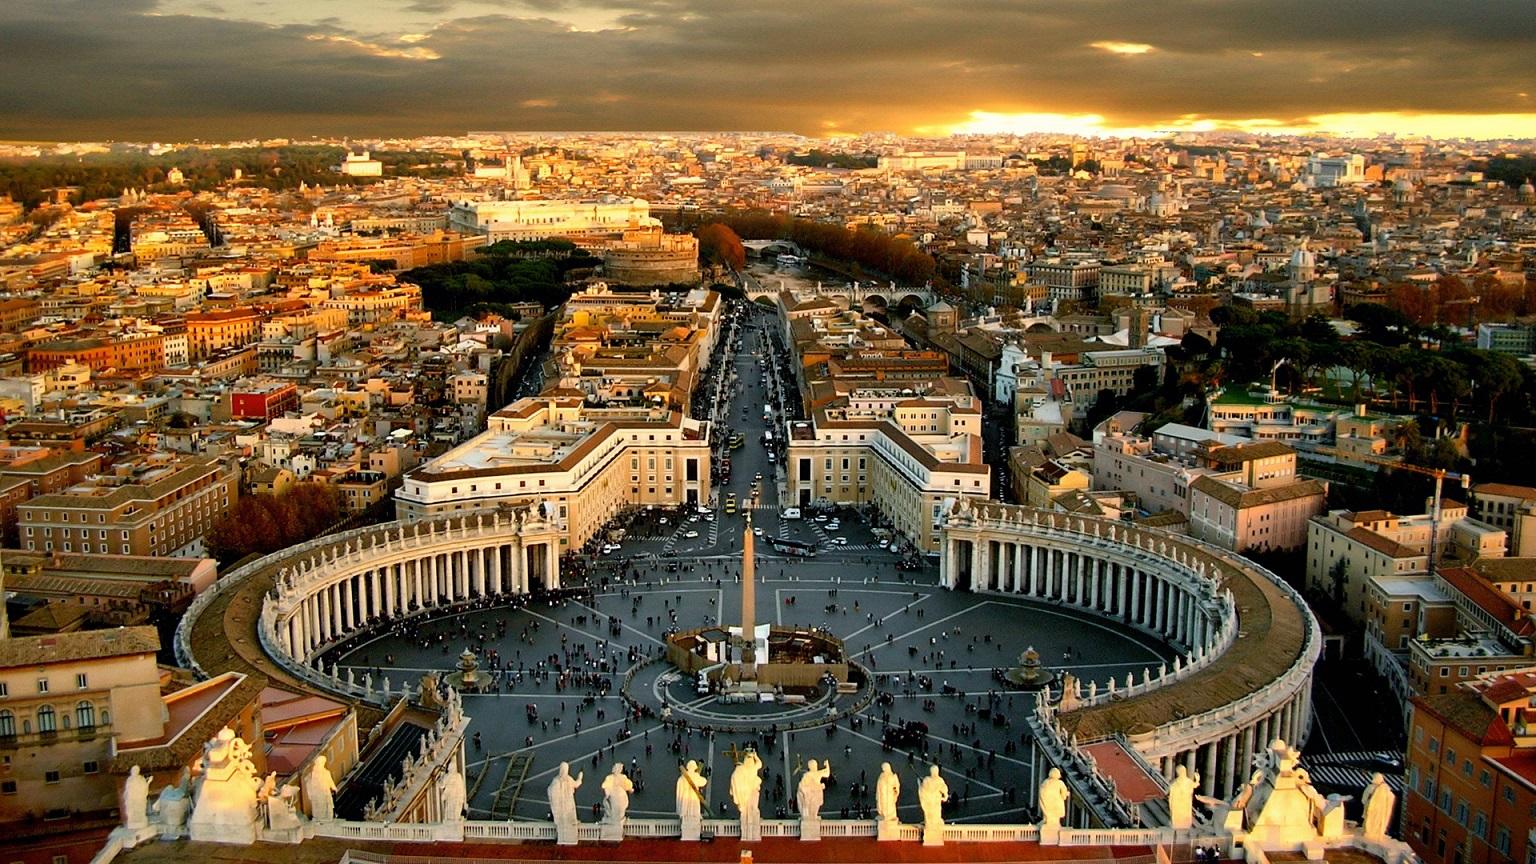 【浩源博客】世界上最小的国家：梵蒂冈 小到什么概念？浩源博客告诉你